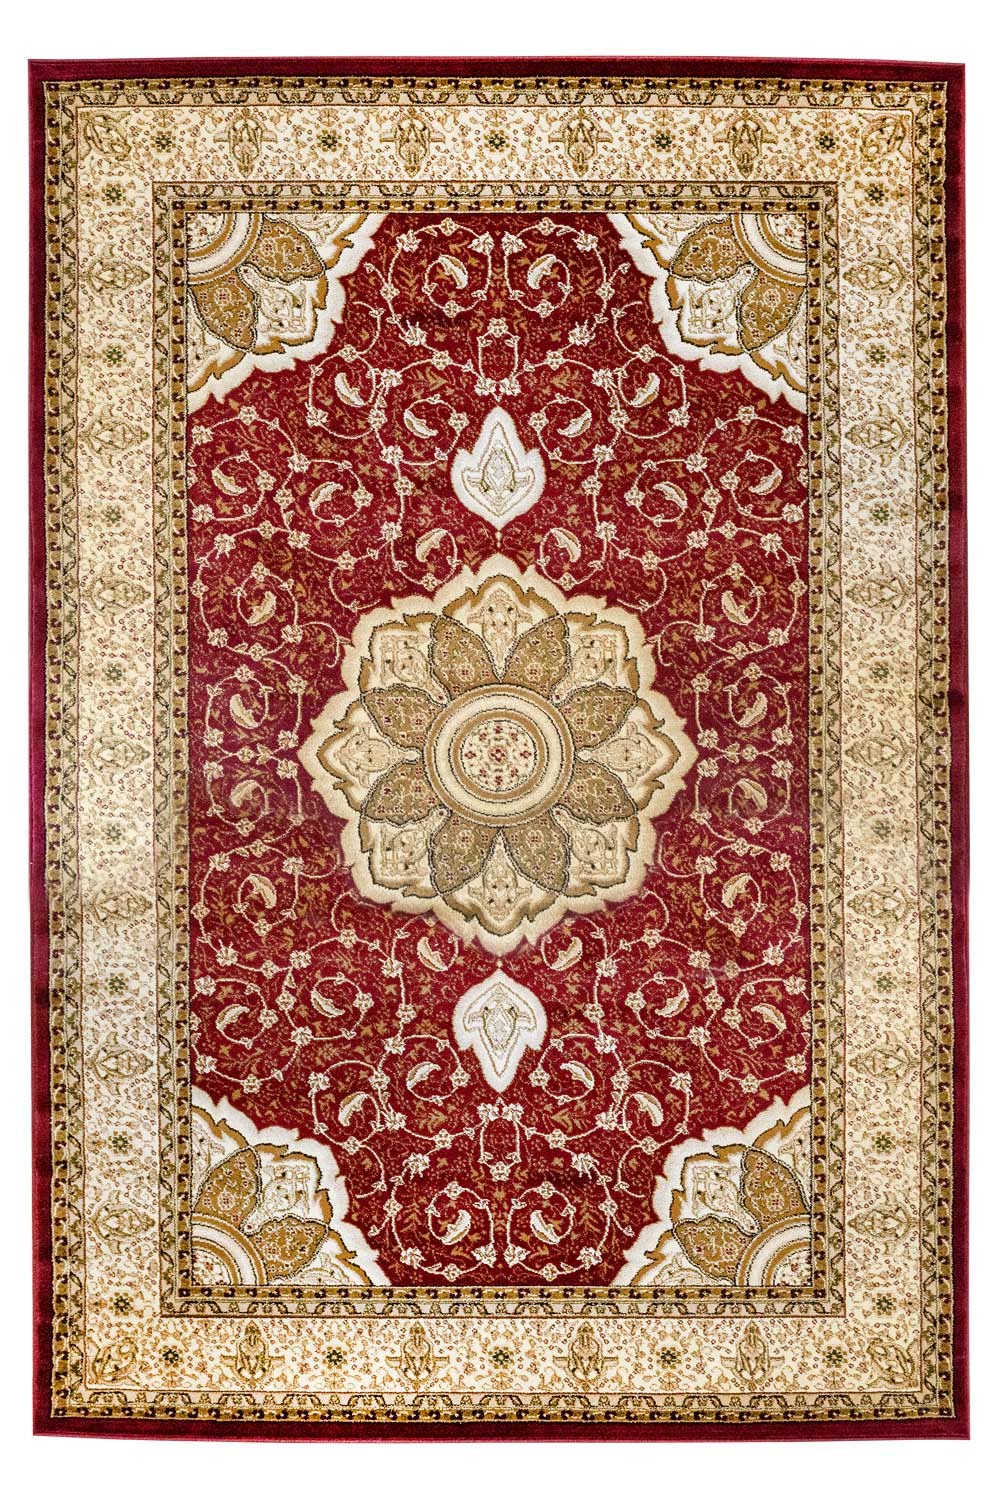 Kusový koberec Anatolia 5328 green